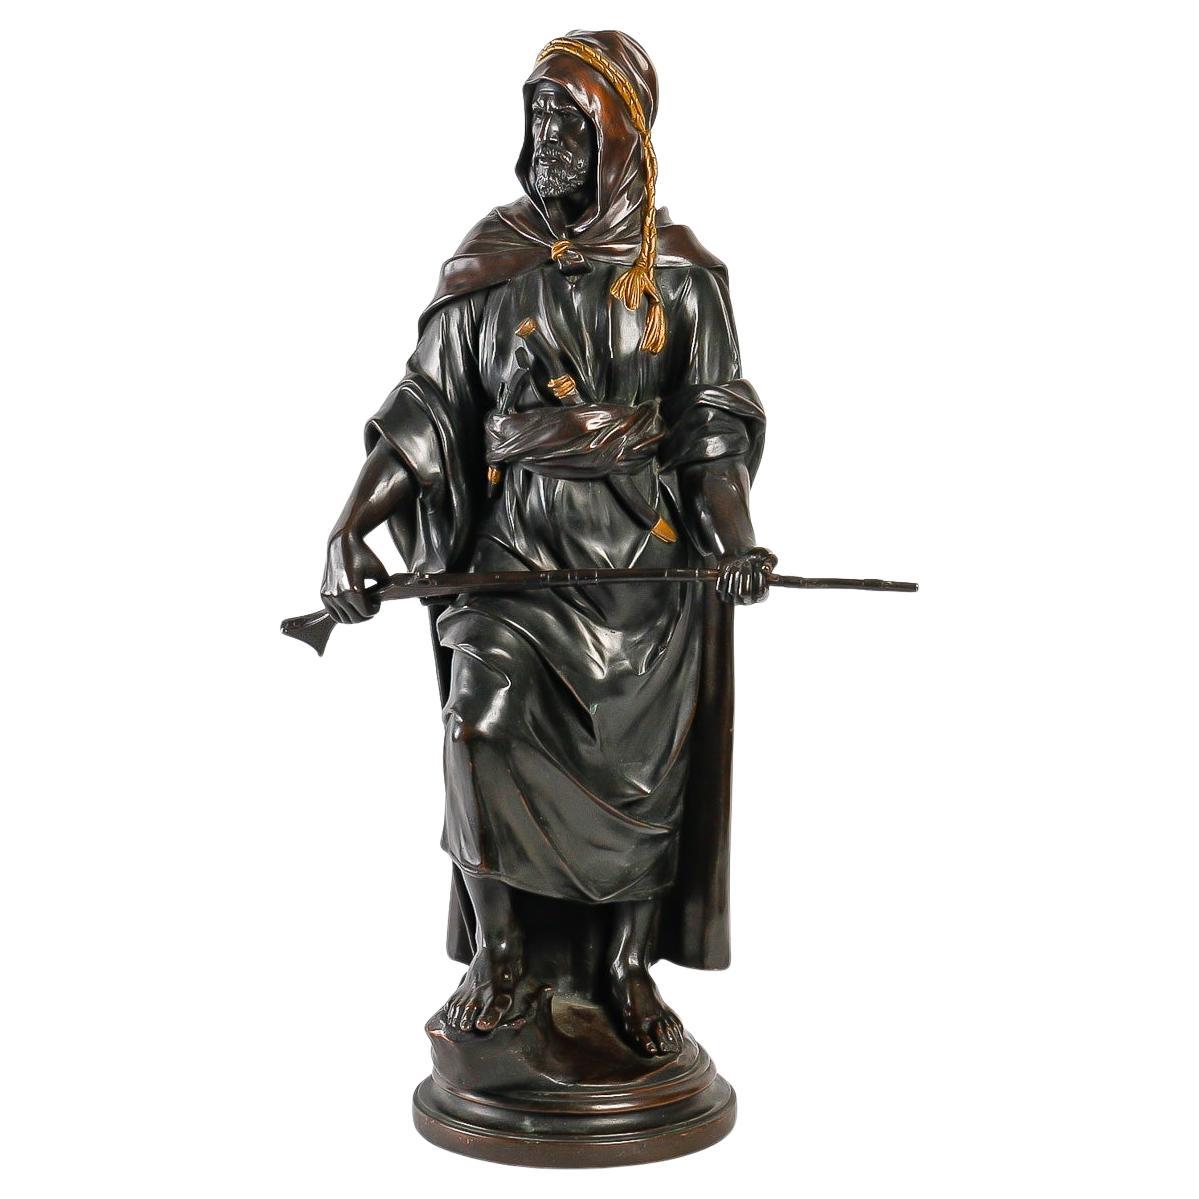 Bronze Sculpture by Franz Bergmann, "The Sultan", Orientalist Art.